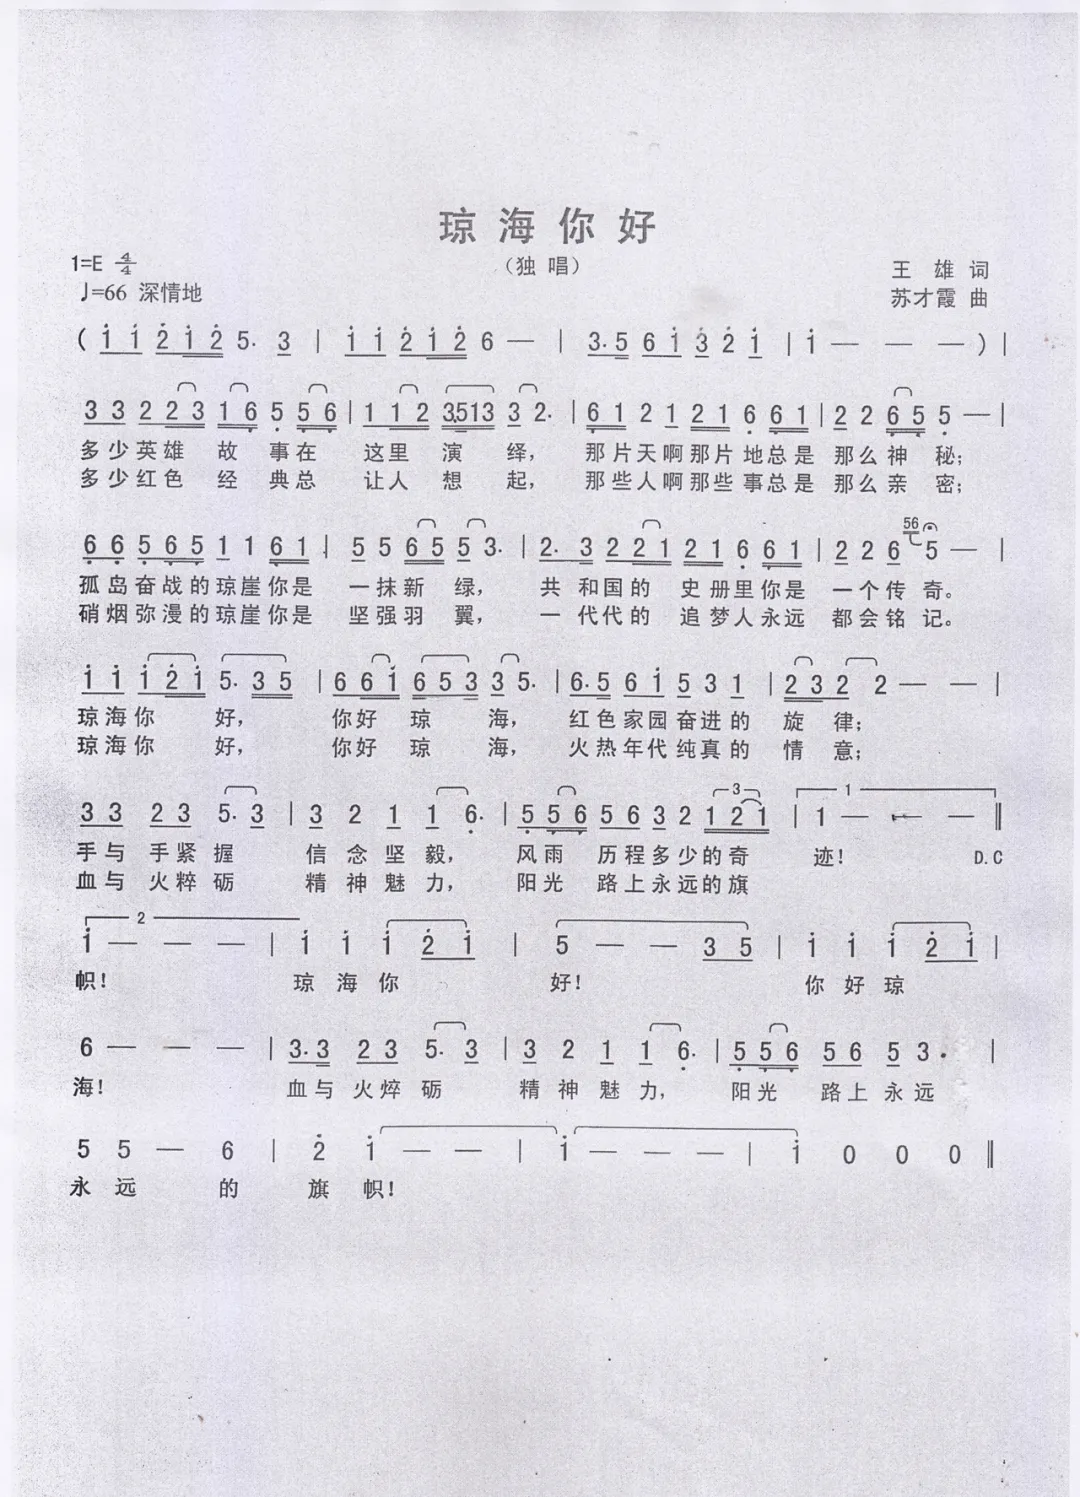 原创歌曲《琼海你好》首发，谨以此歌献给中国共产党成立100周年